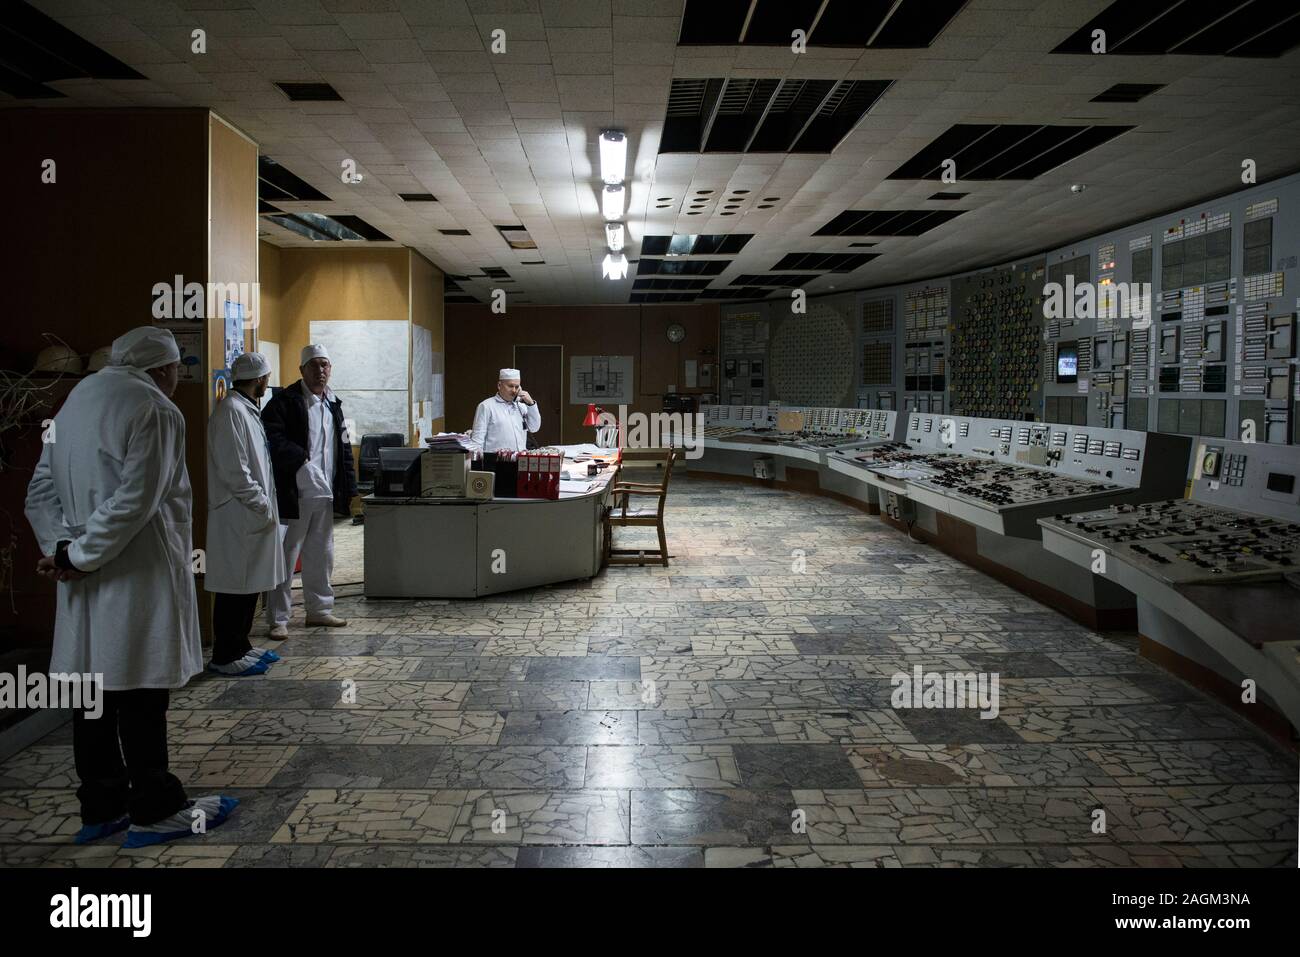 Mitarbeiter des Kernkraftwerks Tschernobyl Arbeiten im Kontrollraum des Reaktors 2 des Kernkraftwerks Tschernobyl. Die Zimmer hat seinen ursprünglichen Displays und Panels der Schaltflächen. Kernkraftwerk Tschernobyl, Tschernobyl, Ivankiv Rajon, Oblast Kiew, Ukraine, Europa Stockfoto